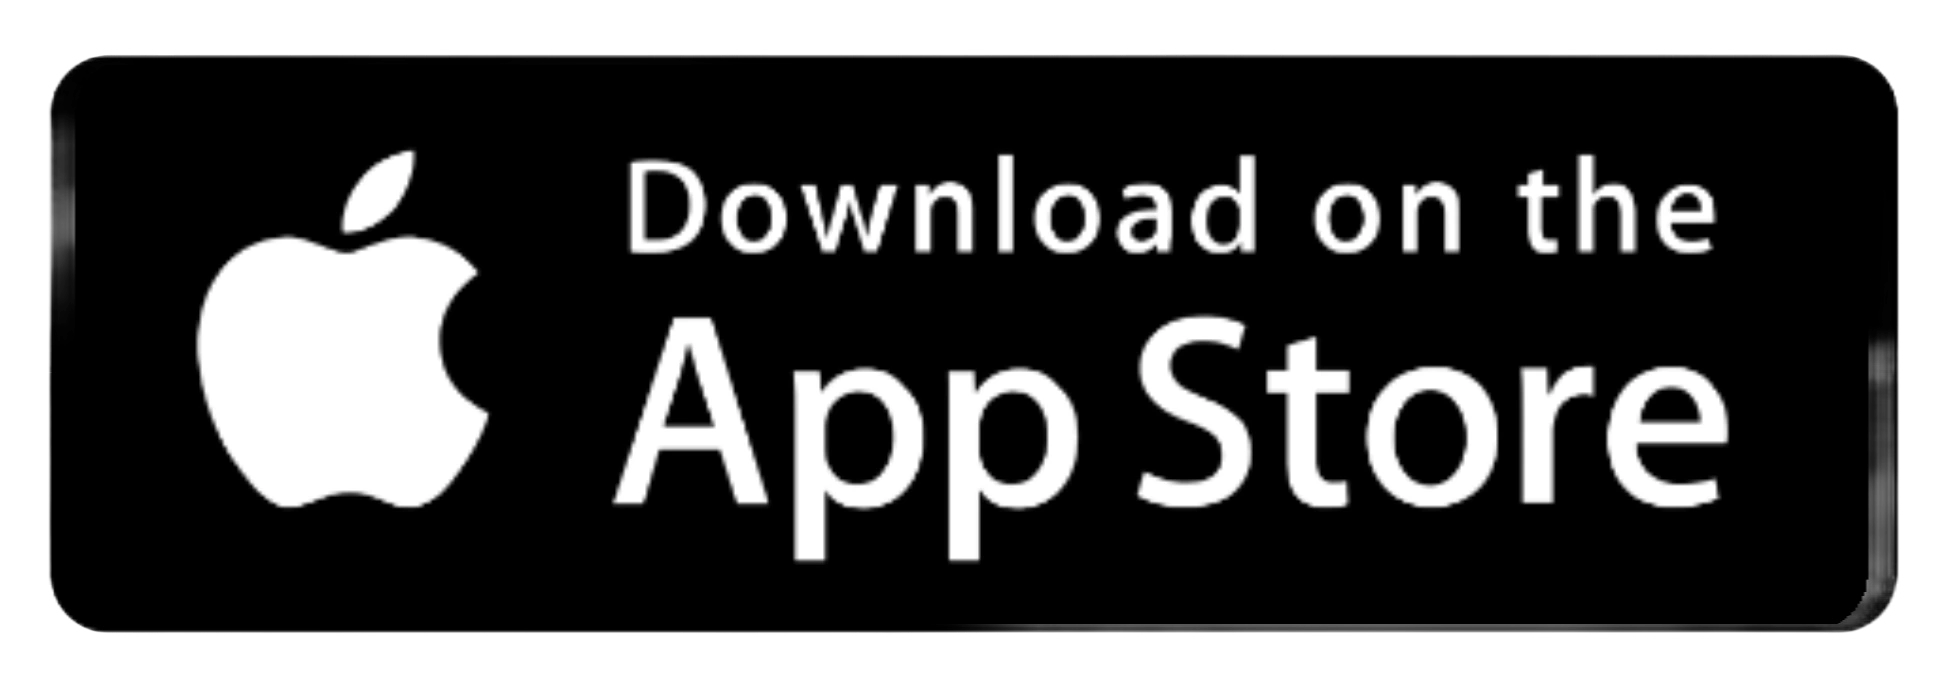 Doubtnut iOS app on App Store